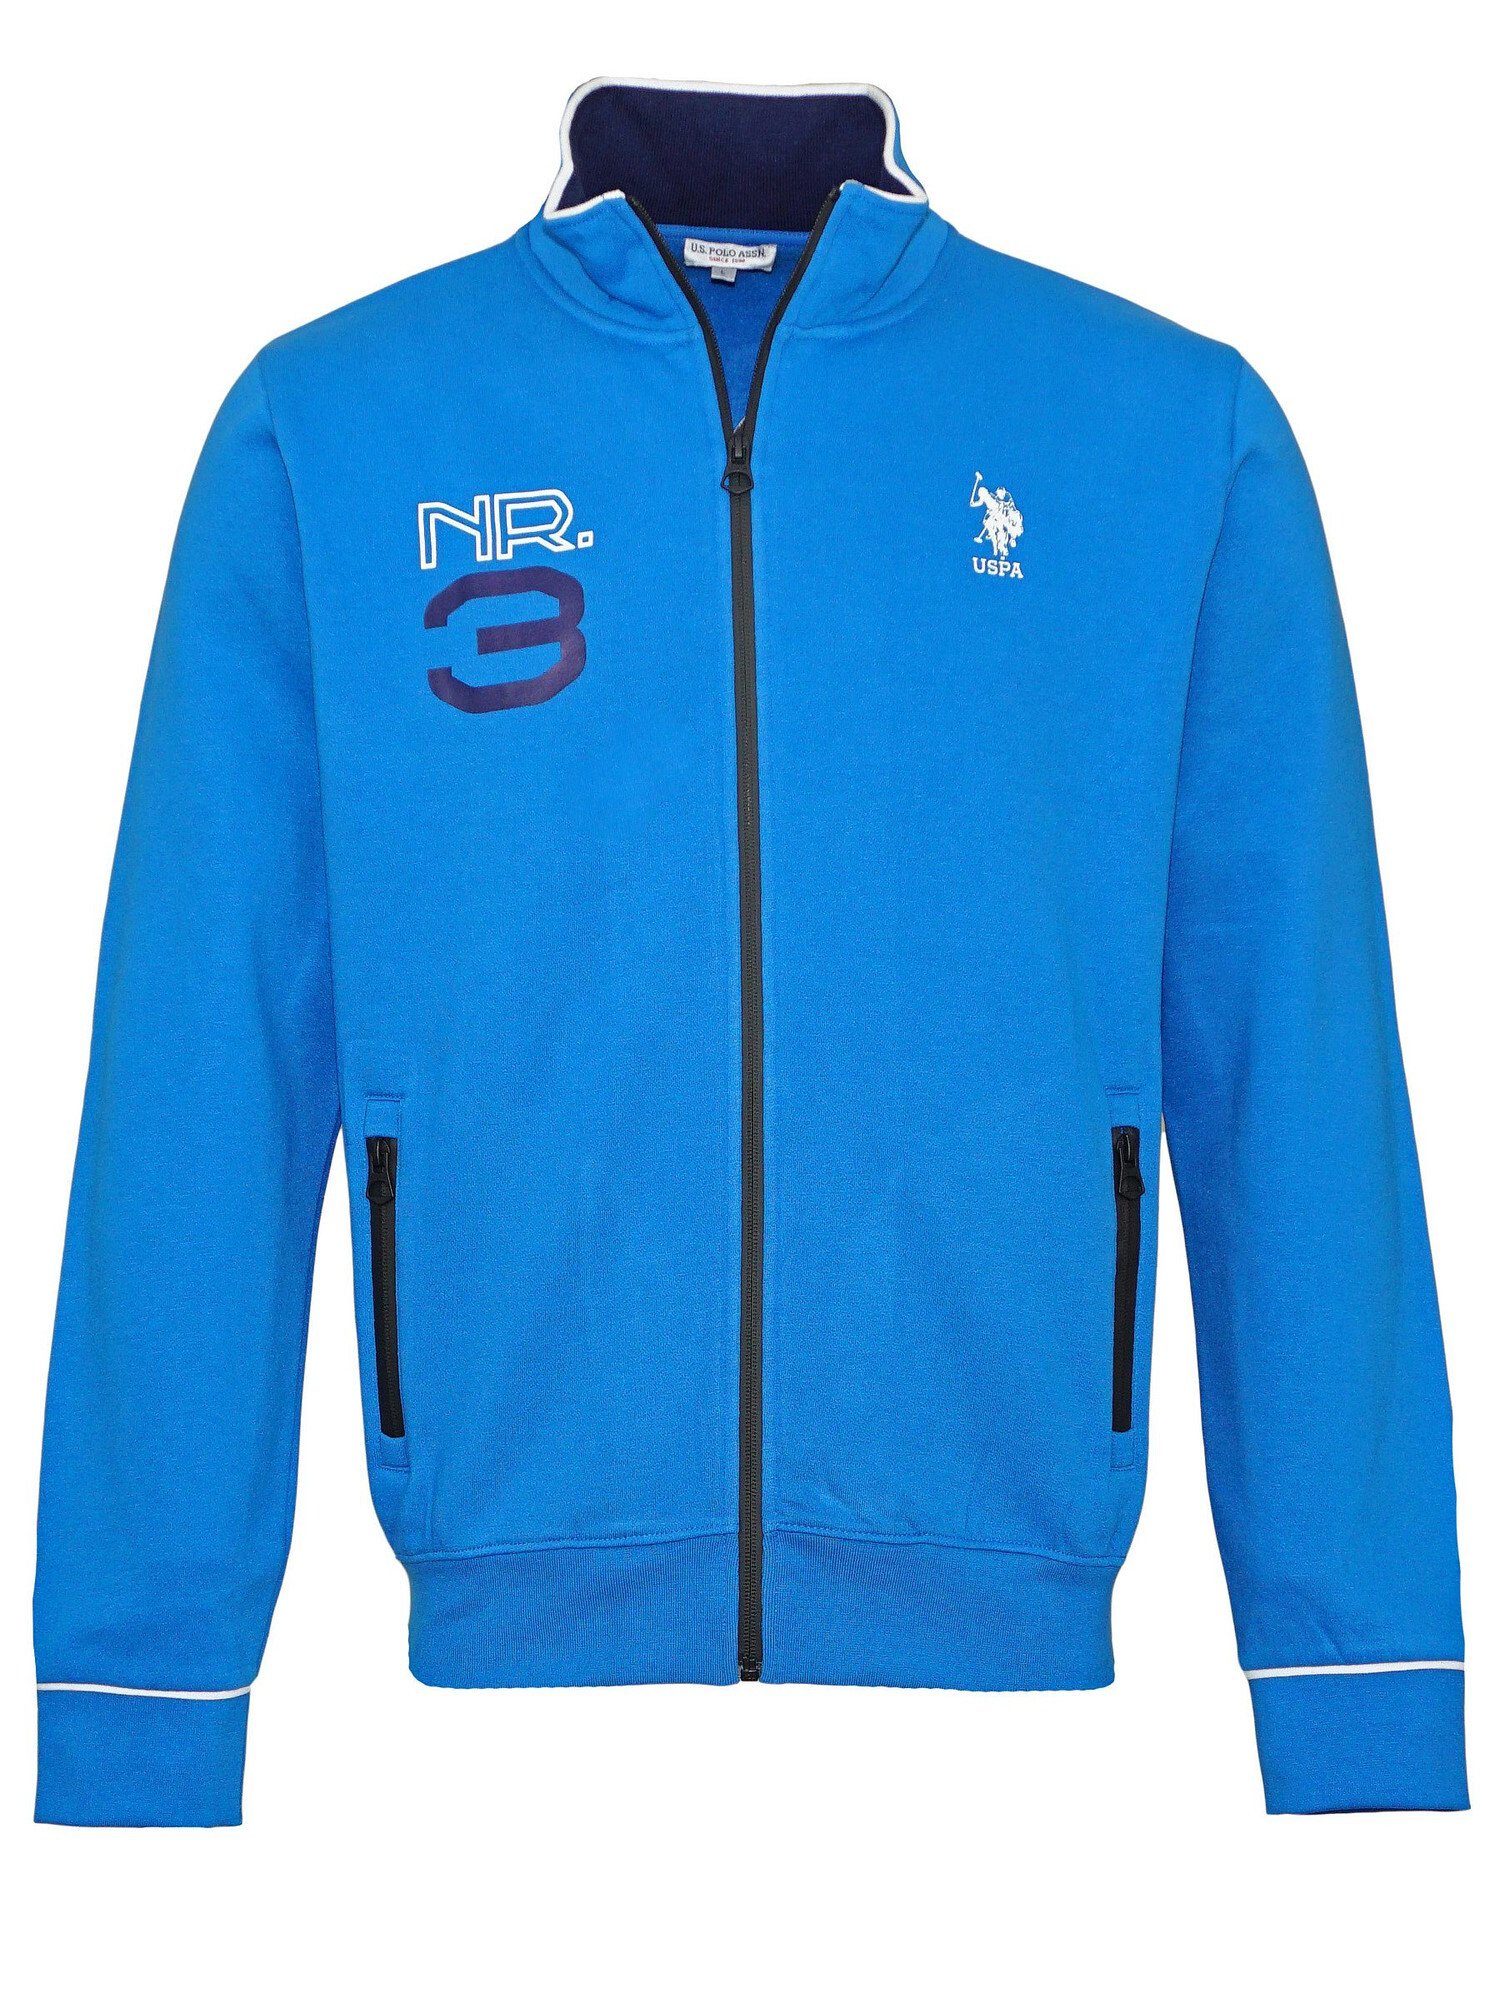 blau Zip Pro No.3 Full Jacke U.S. Assn Polo Sweatjacke Sweatjacket